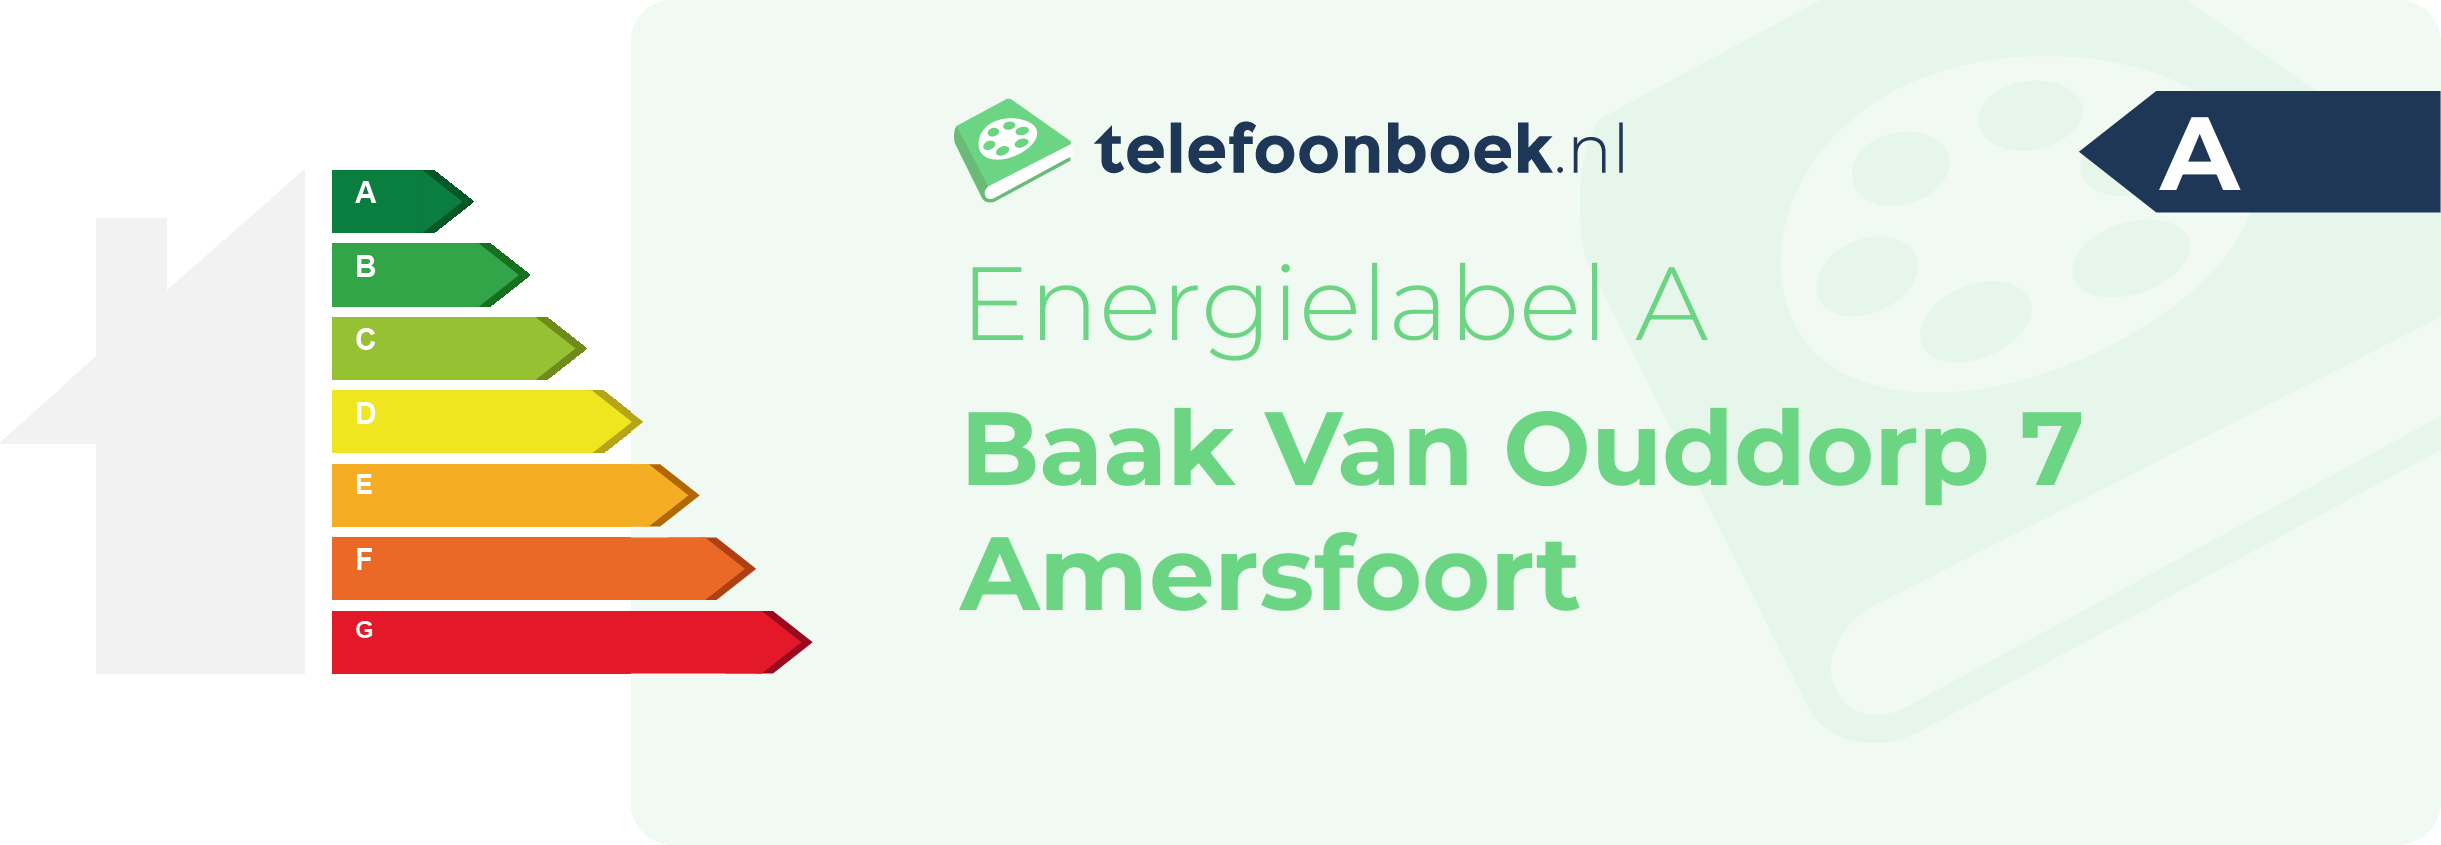 Energielabel Baak Van Ouddorp 7 Amersfoort